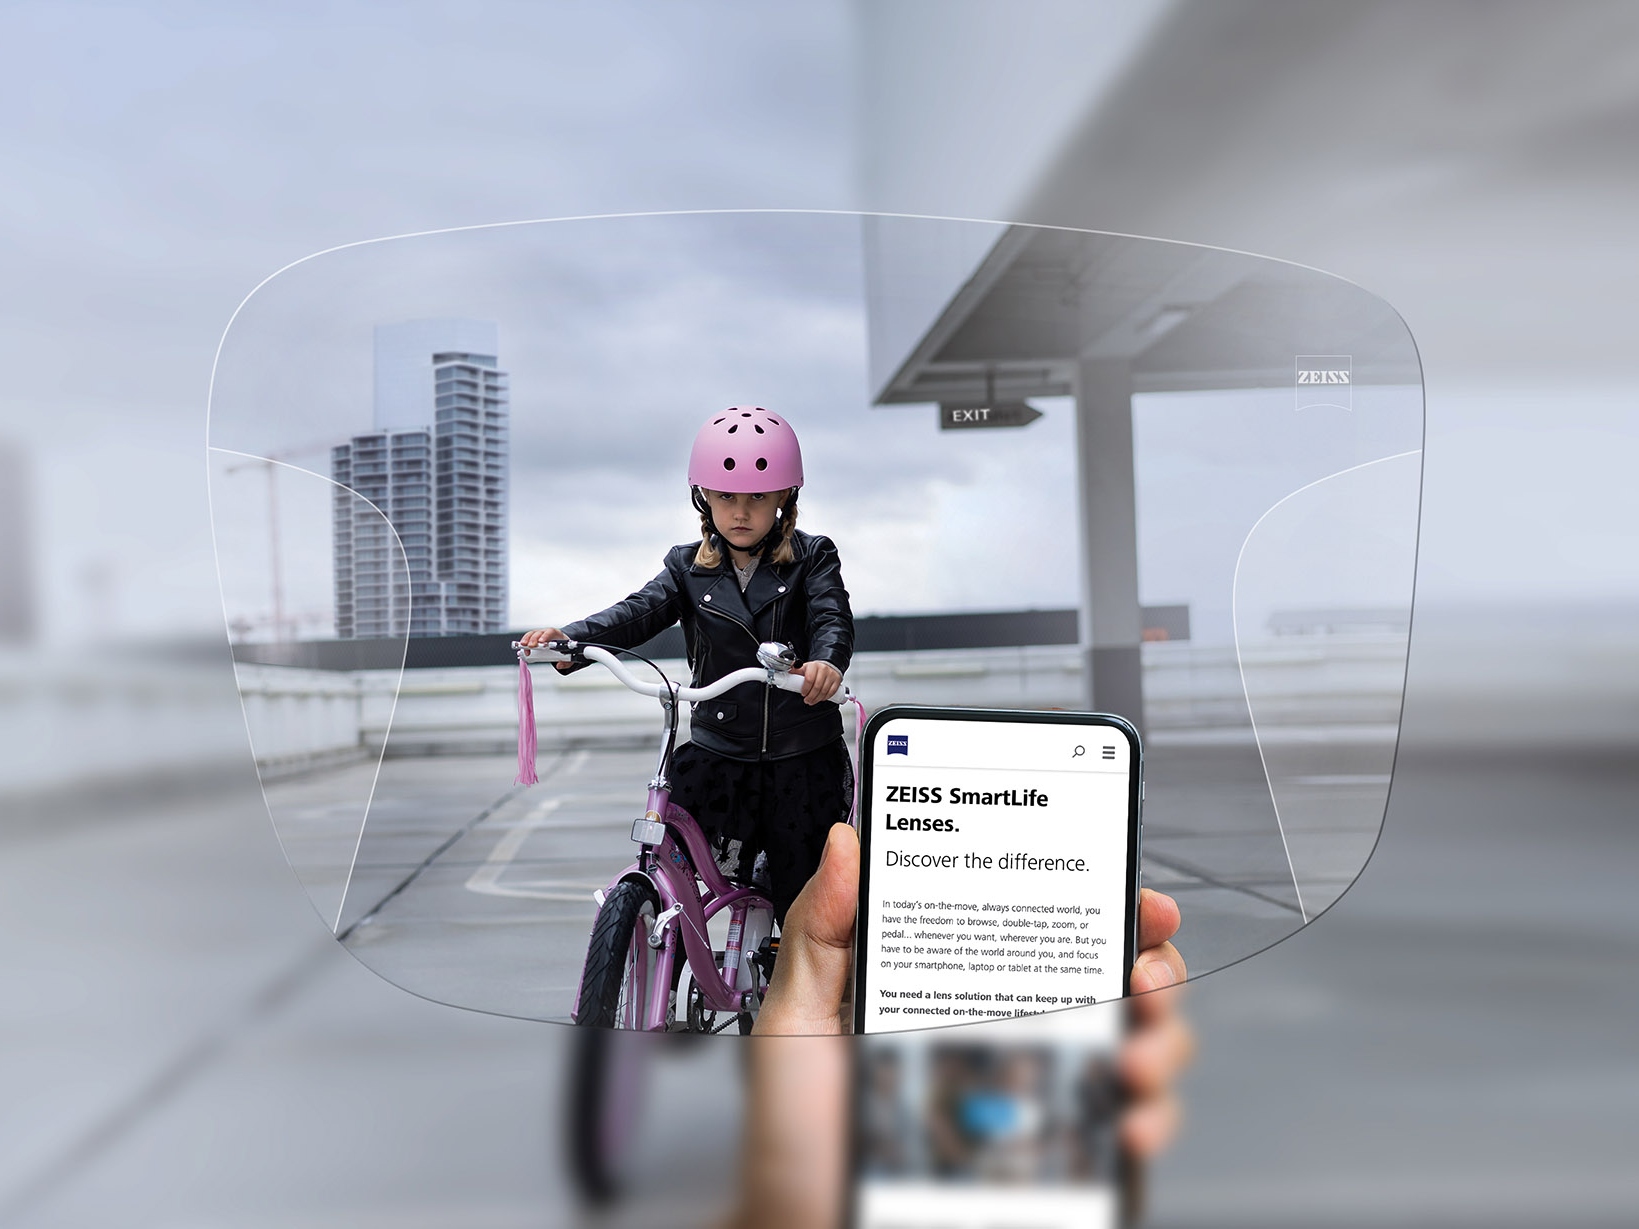 透過蔡司SmartLife智銳漸進鏡片看手機的人。背景可看見一個戴著粉紅色防護頭盔騎單車的女孩。 